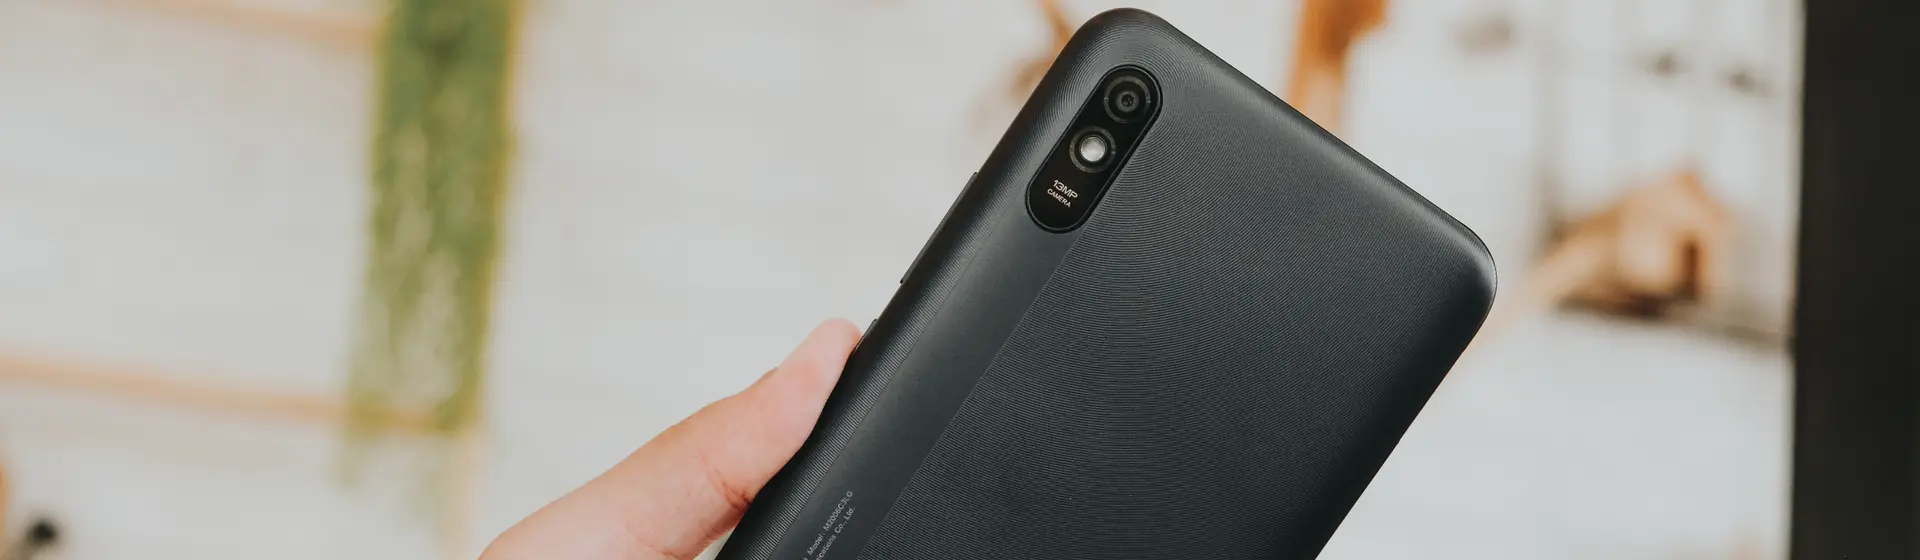 Redmi 9A: tudo sobre o celular barato e básico da Xiaomi